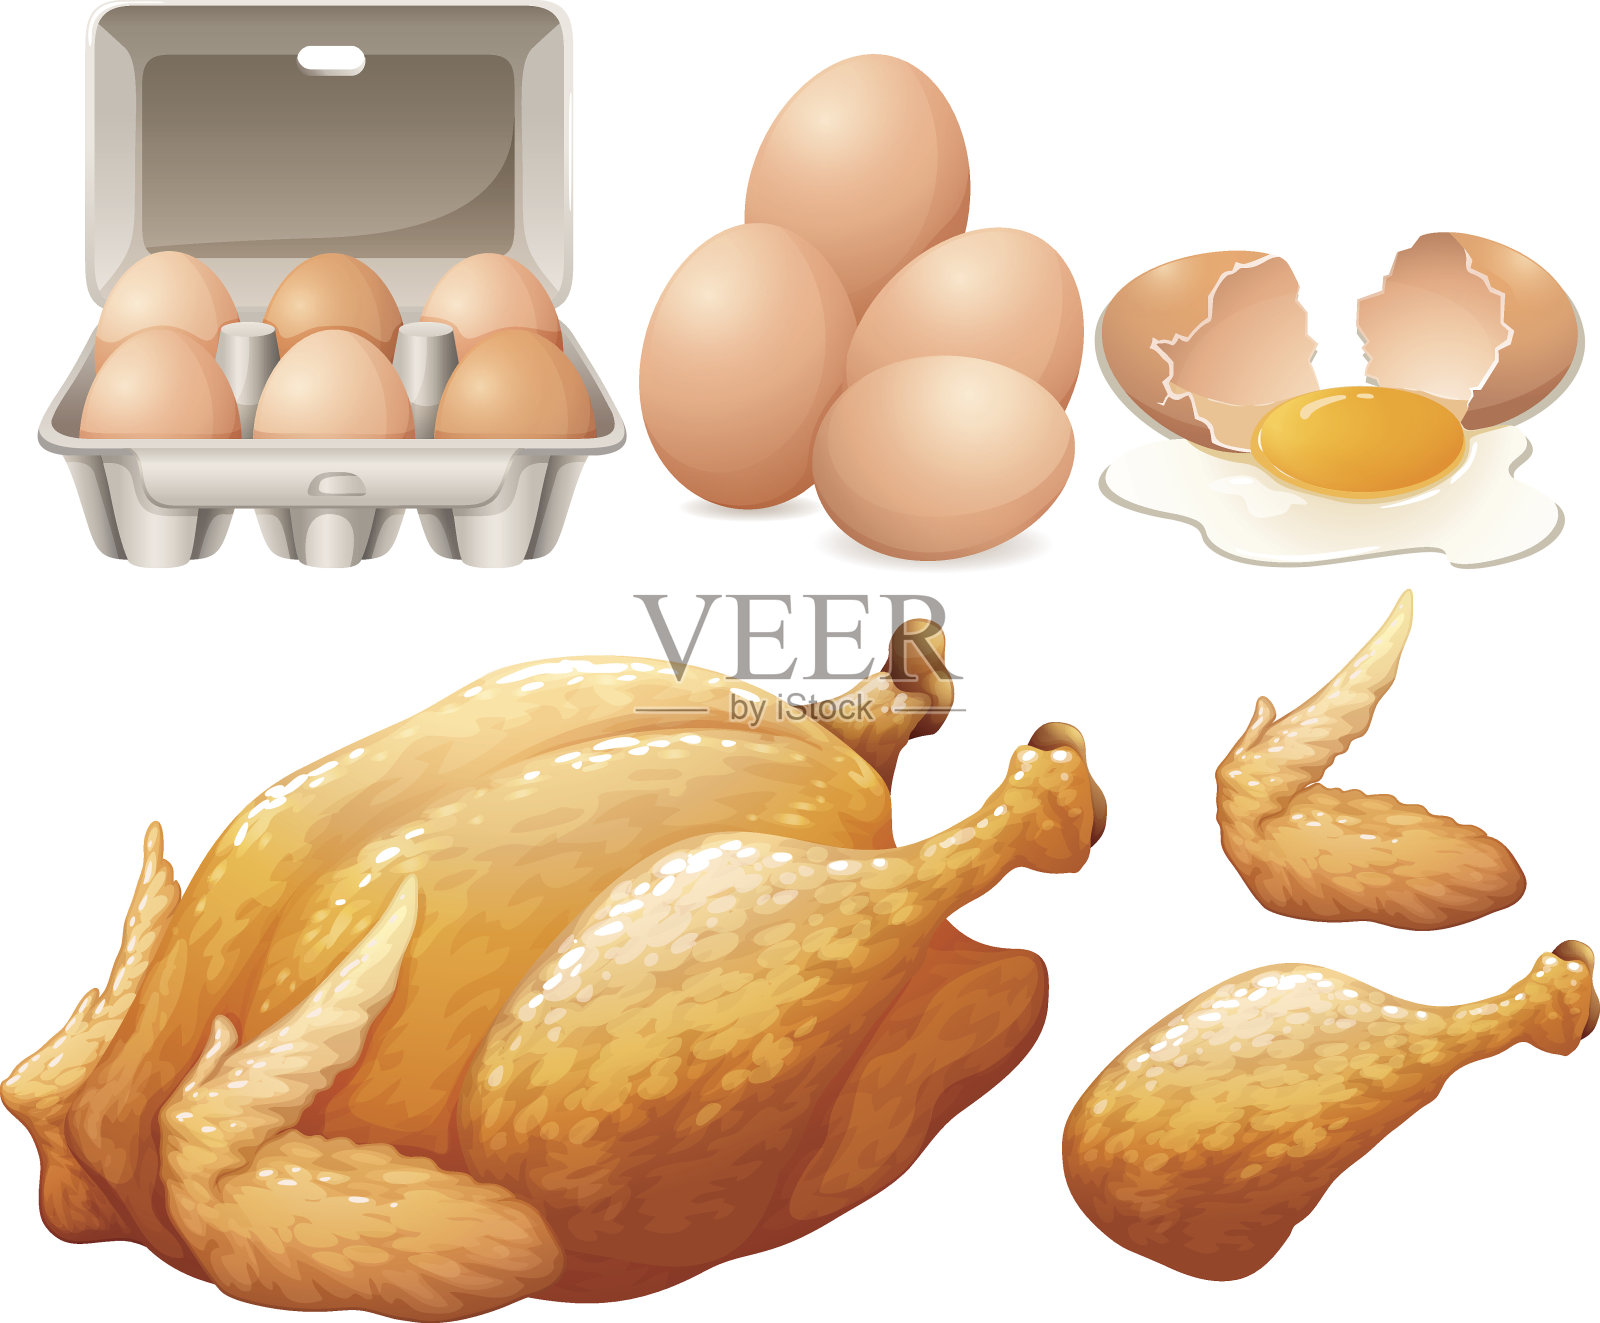 炸鸡和新鲜鸡蛋插画图片素材